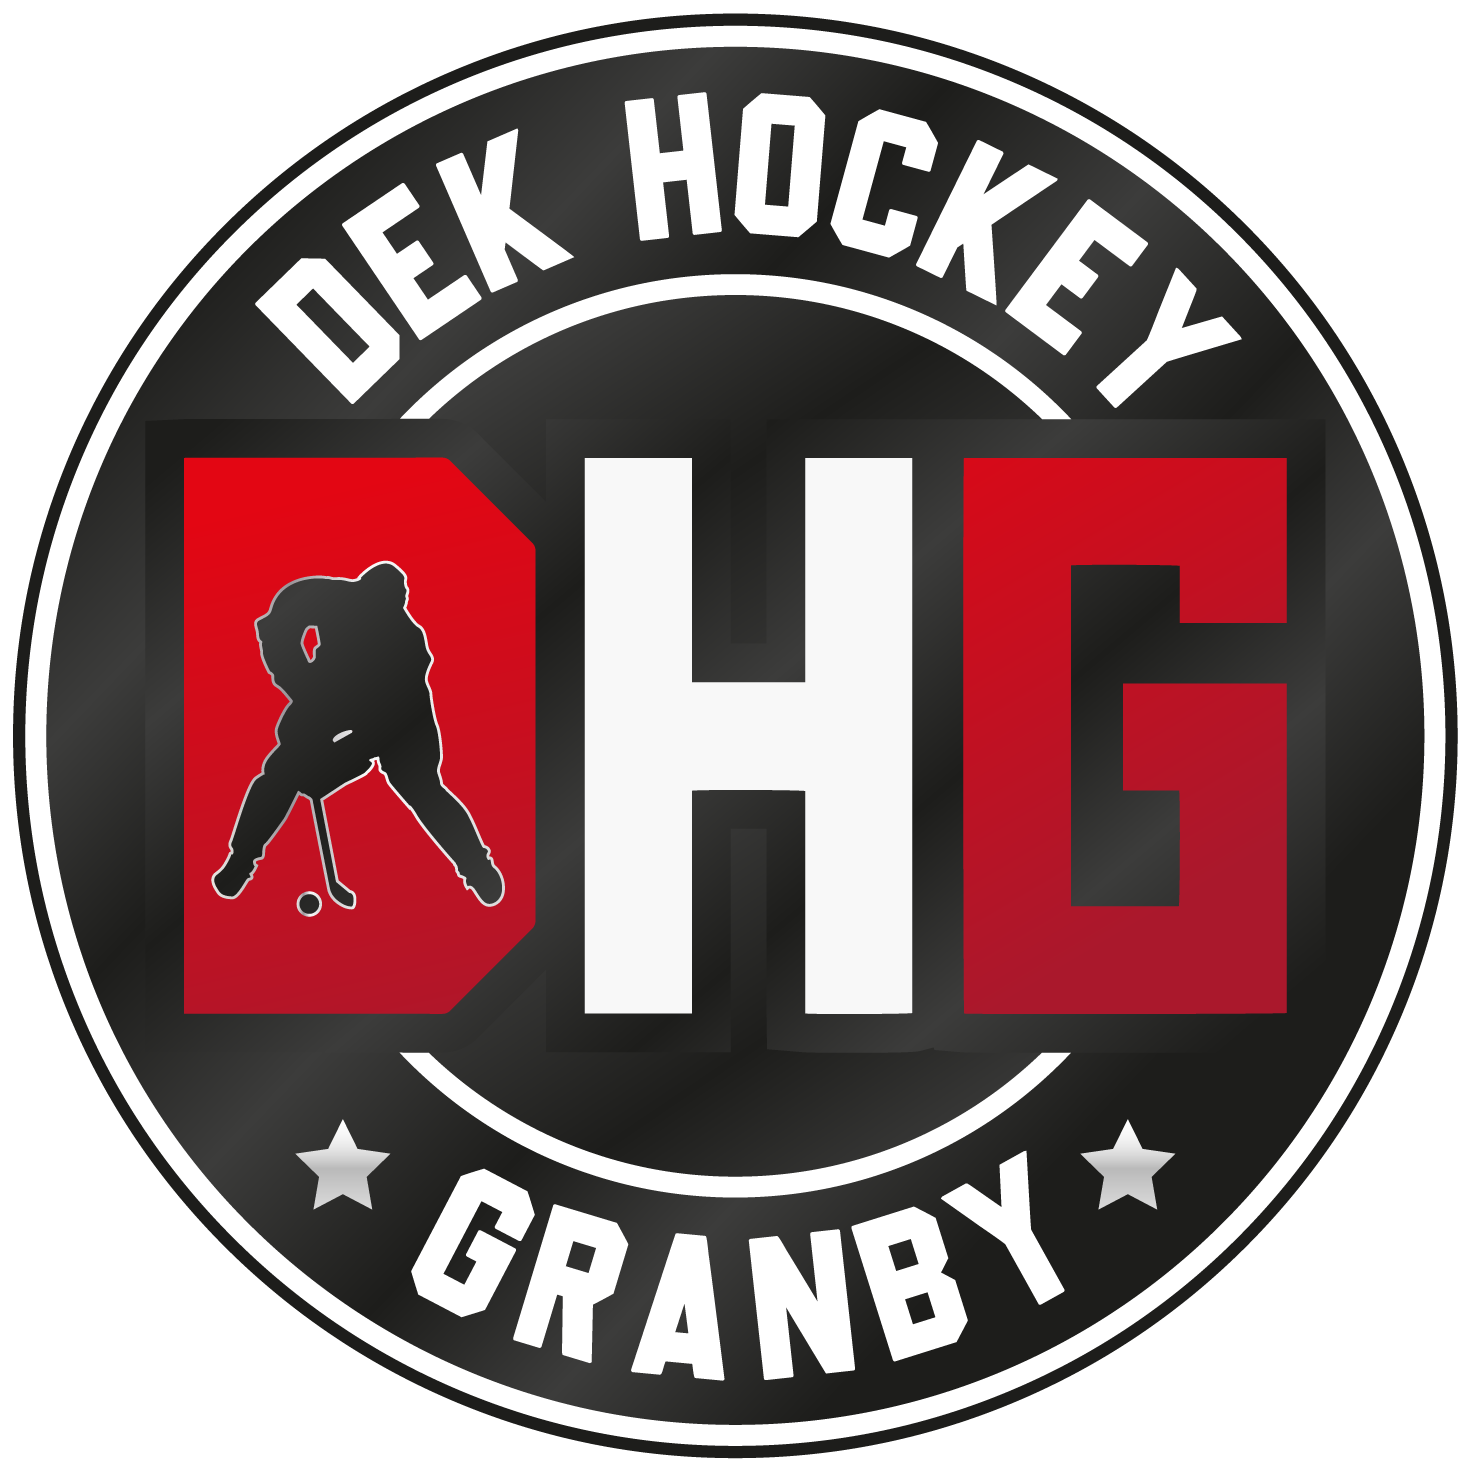 Dek Hockey Granby